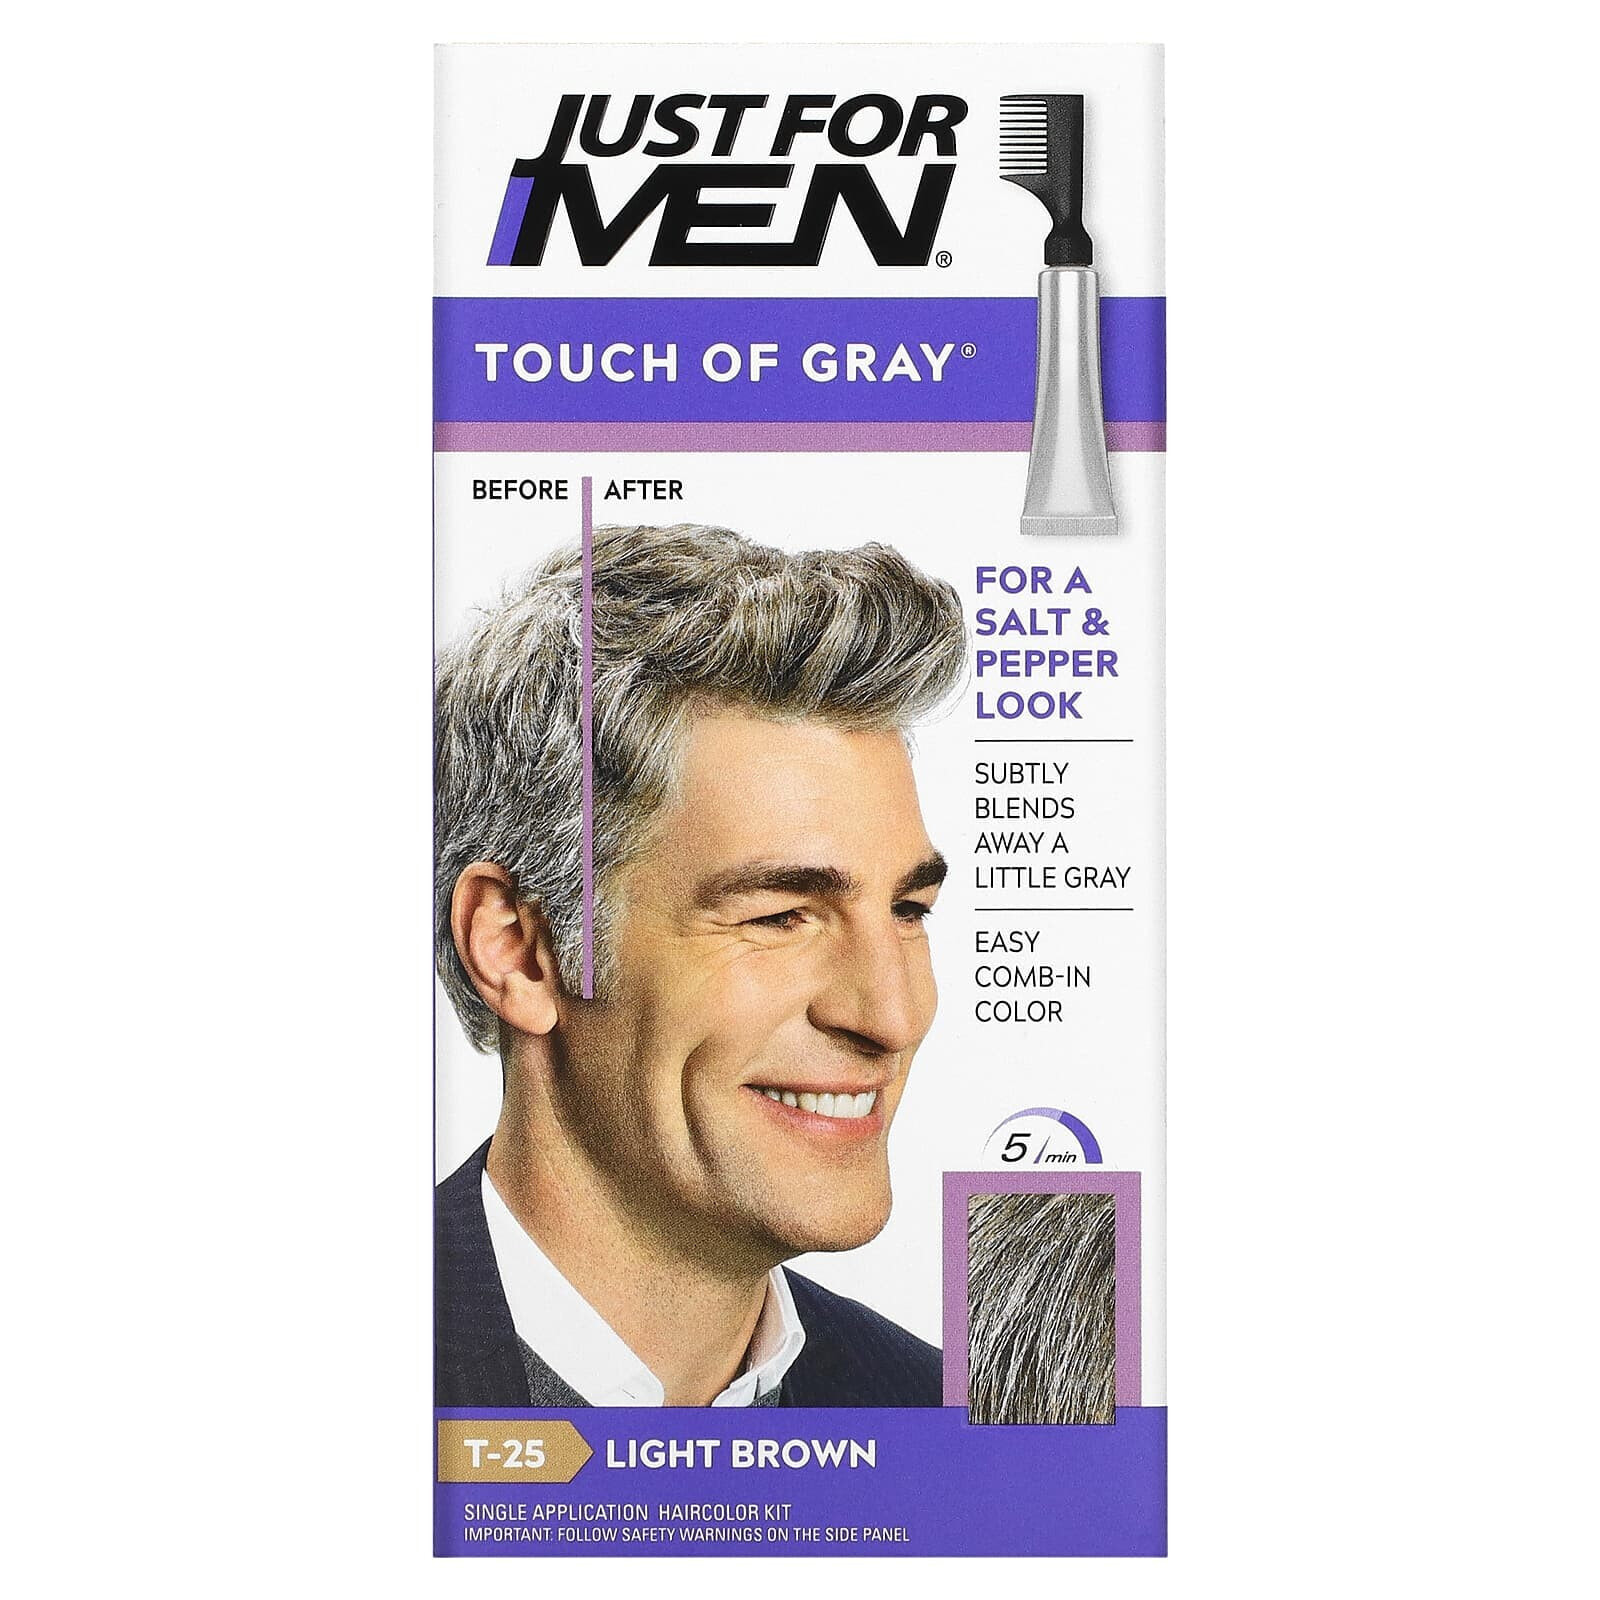 Just for Men, Мужская краска для волос с гребешком Touch of Gray, оттенок черный T-55, 40 г